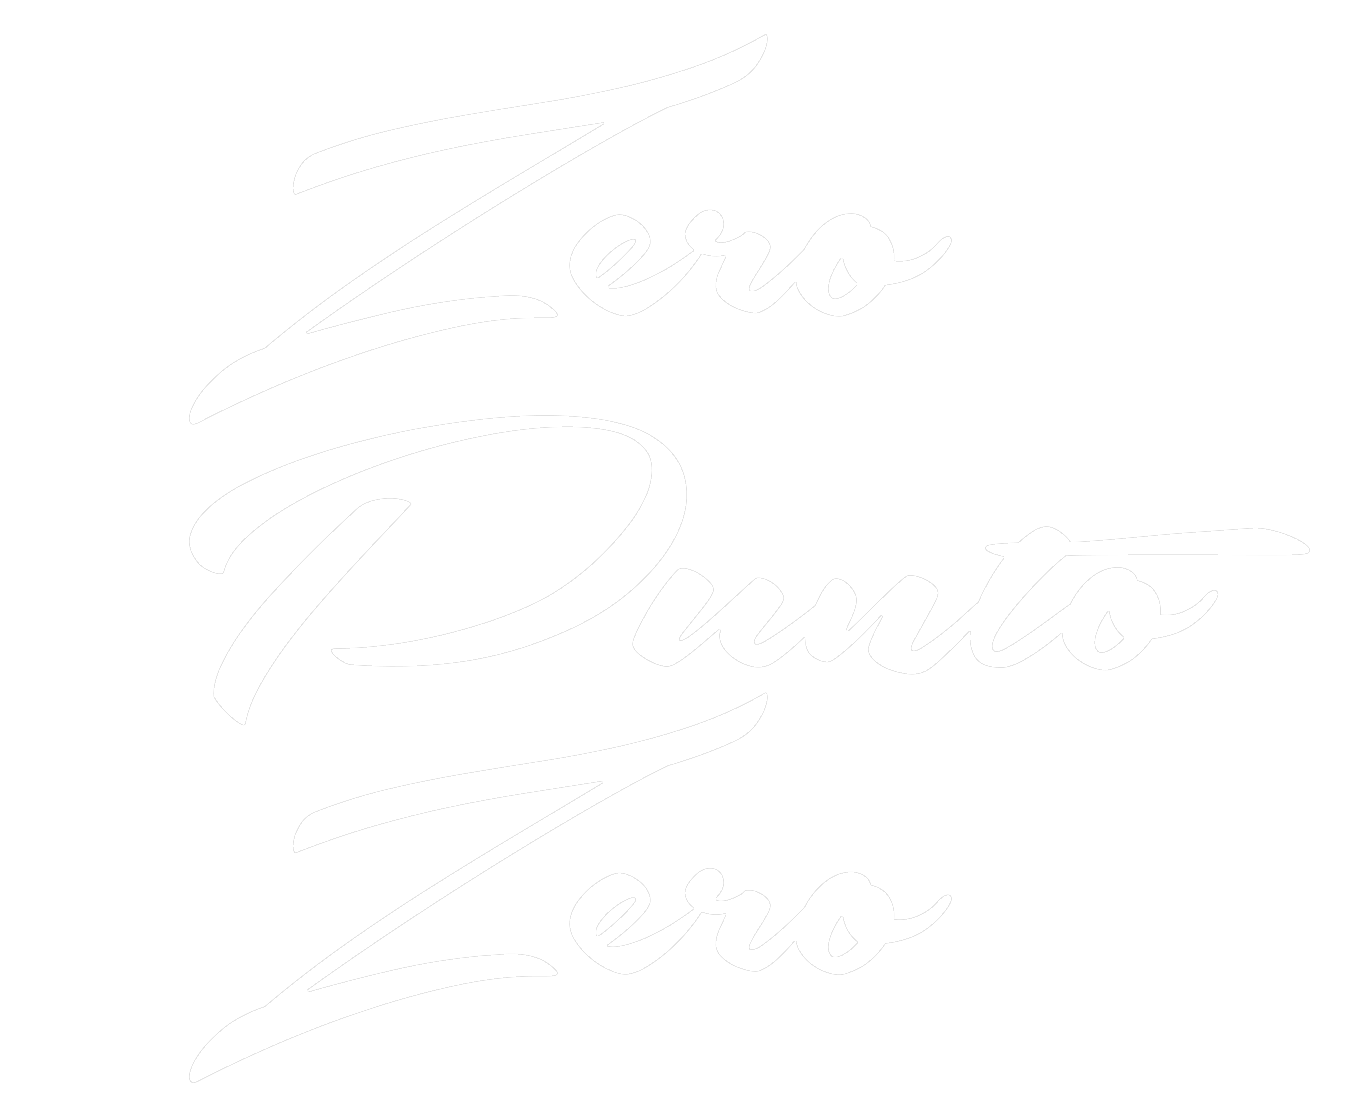 pizzeria zero punto zero